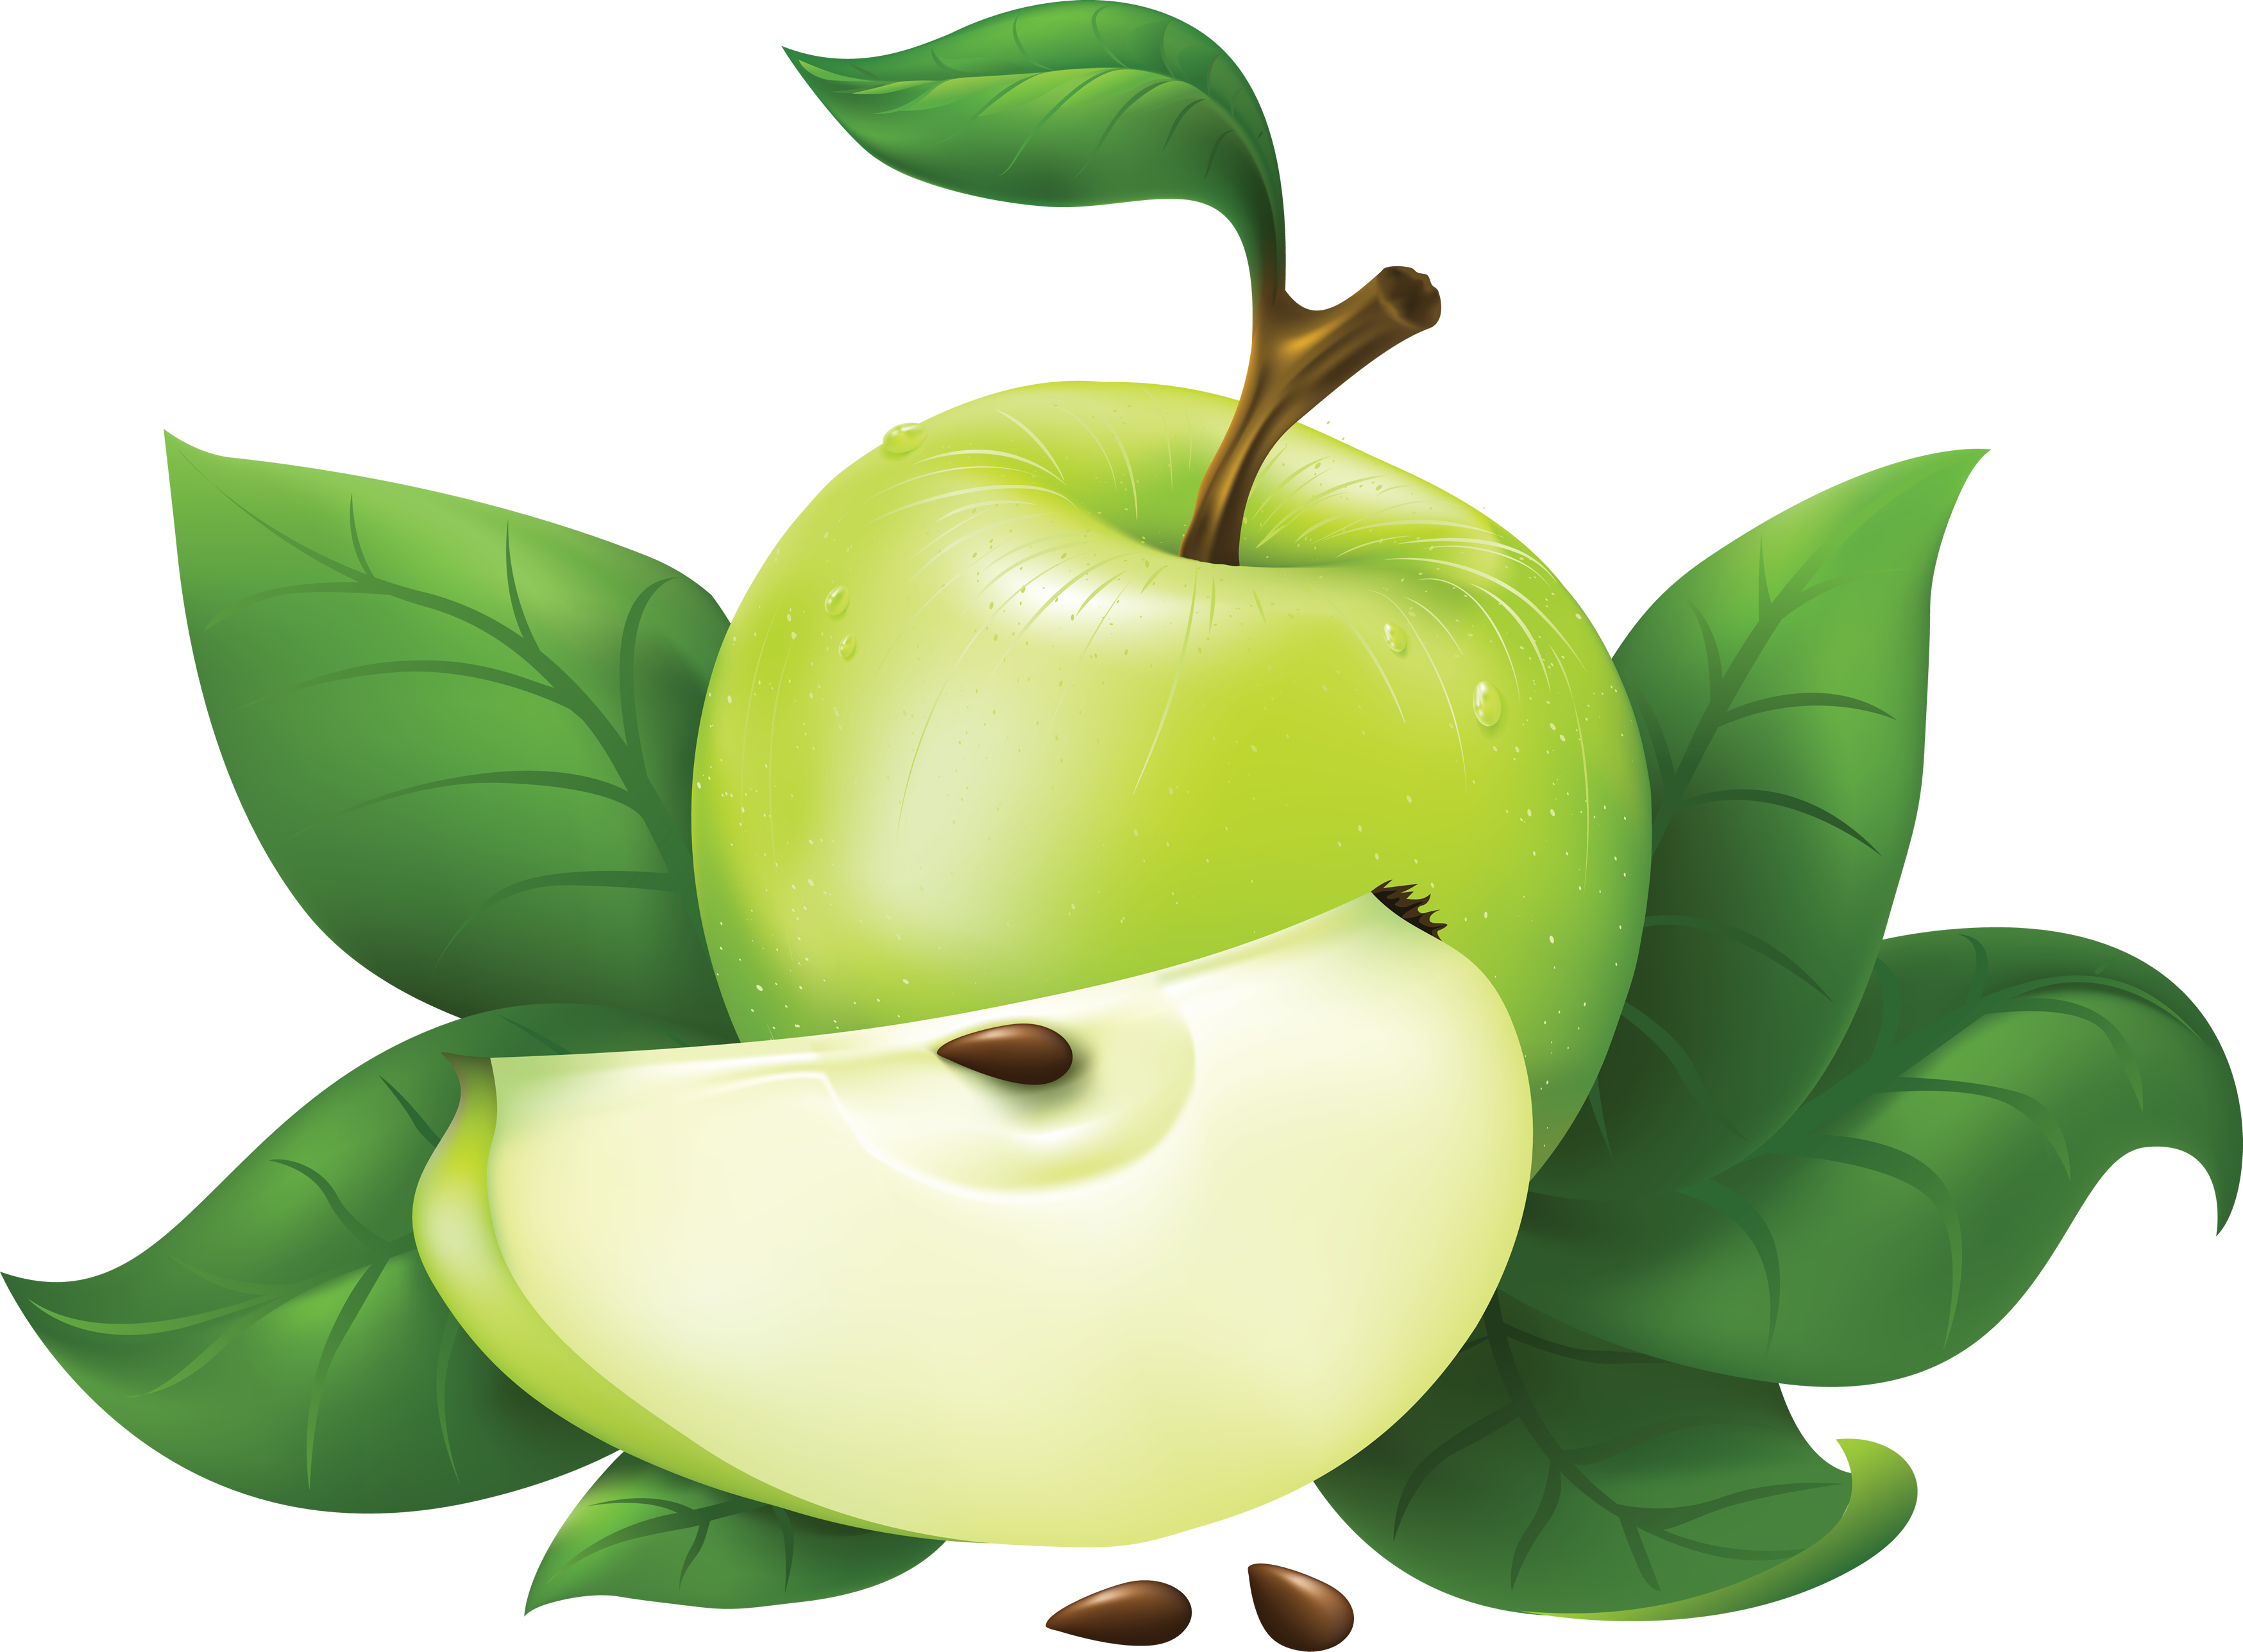 Green PNG transparente de la fruta de manzana